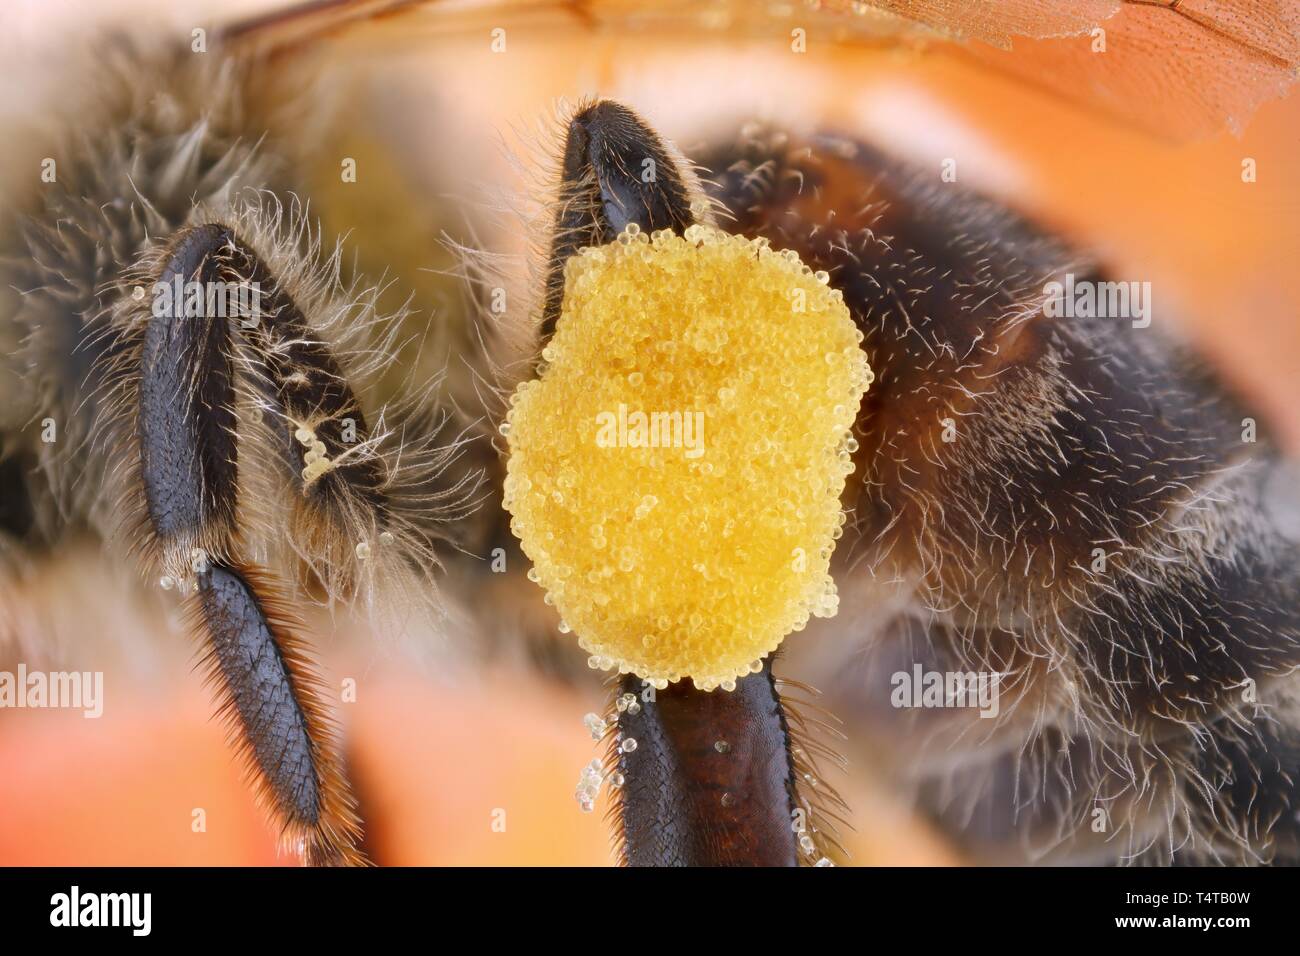 Le pollen, la jambe d'une abeille (Apis mellifera) Banque D'Images